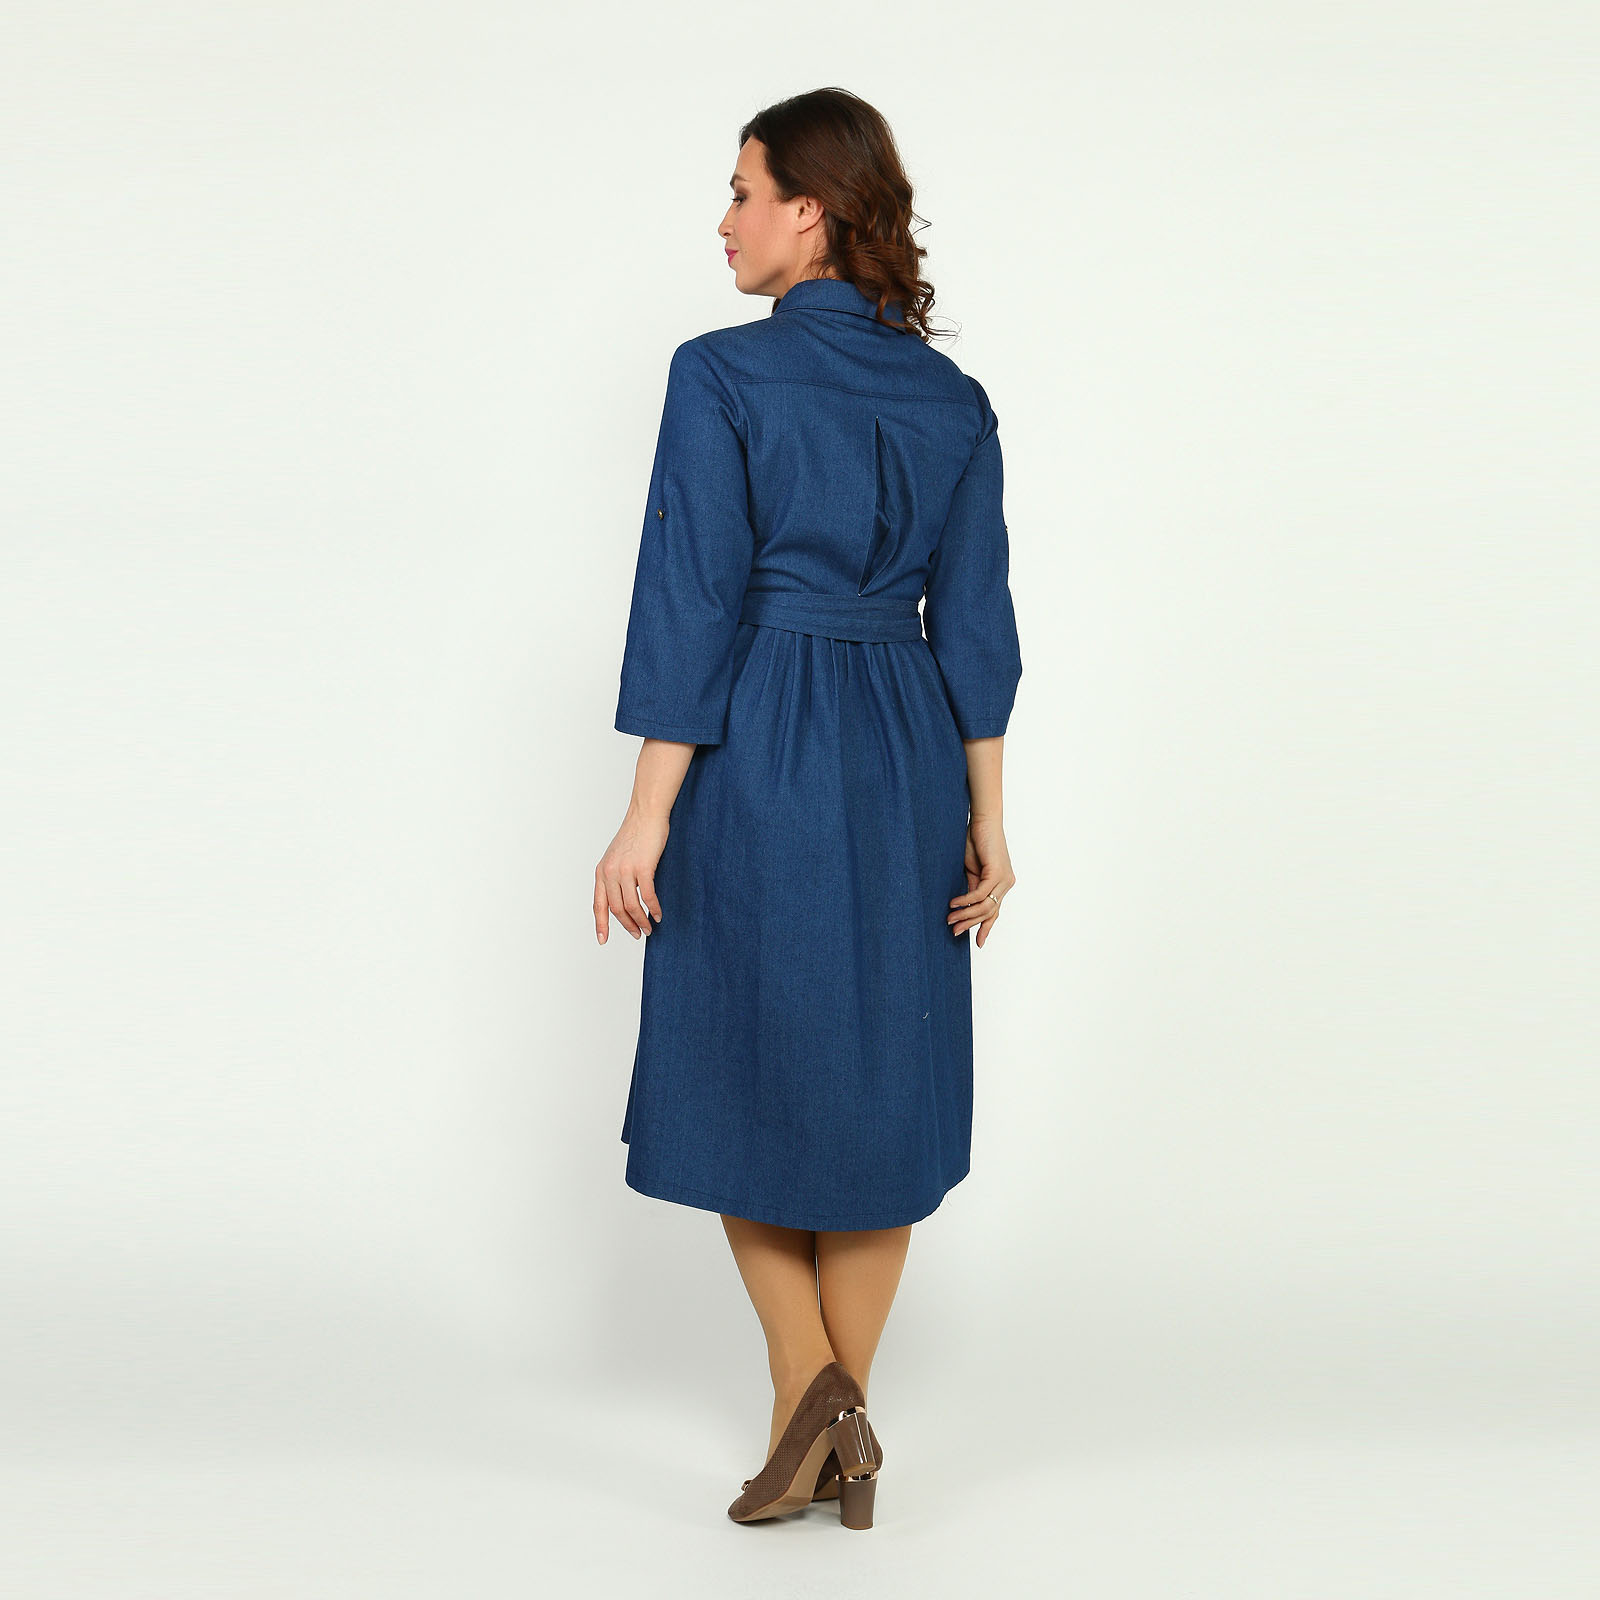 Платье-рубашка из джинсовой ткани Elletto Life, размер 54, цвет голубой - фото 4